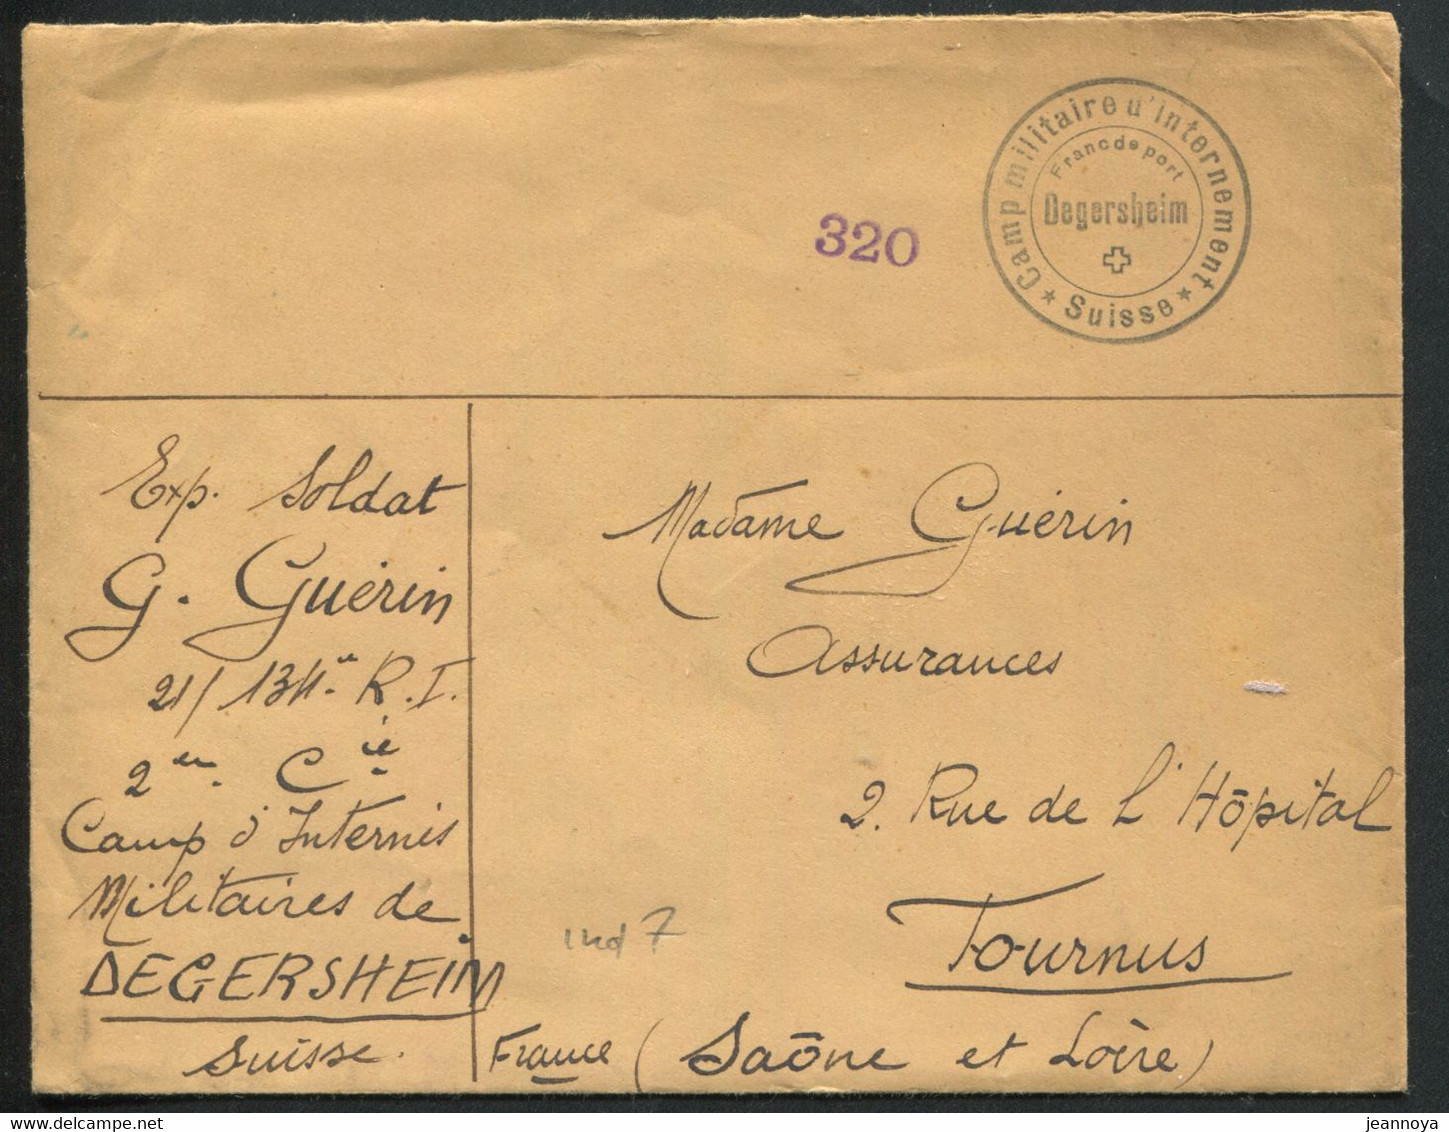 SUISSE - LETTRE OBL. " CAMP MILITAIRE D'INTERNEMENT / FRANC DE PORT / DEGERSHEIM / SUISSE " EN 1940 - TB - Postmarks